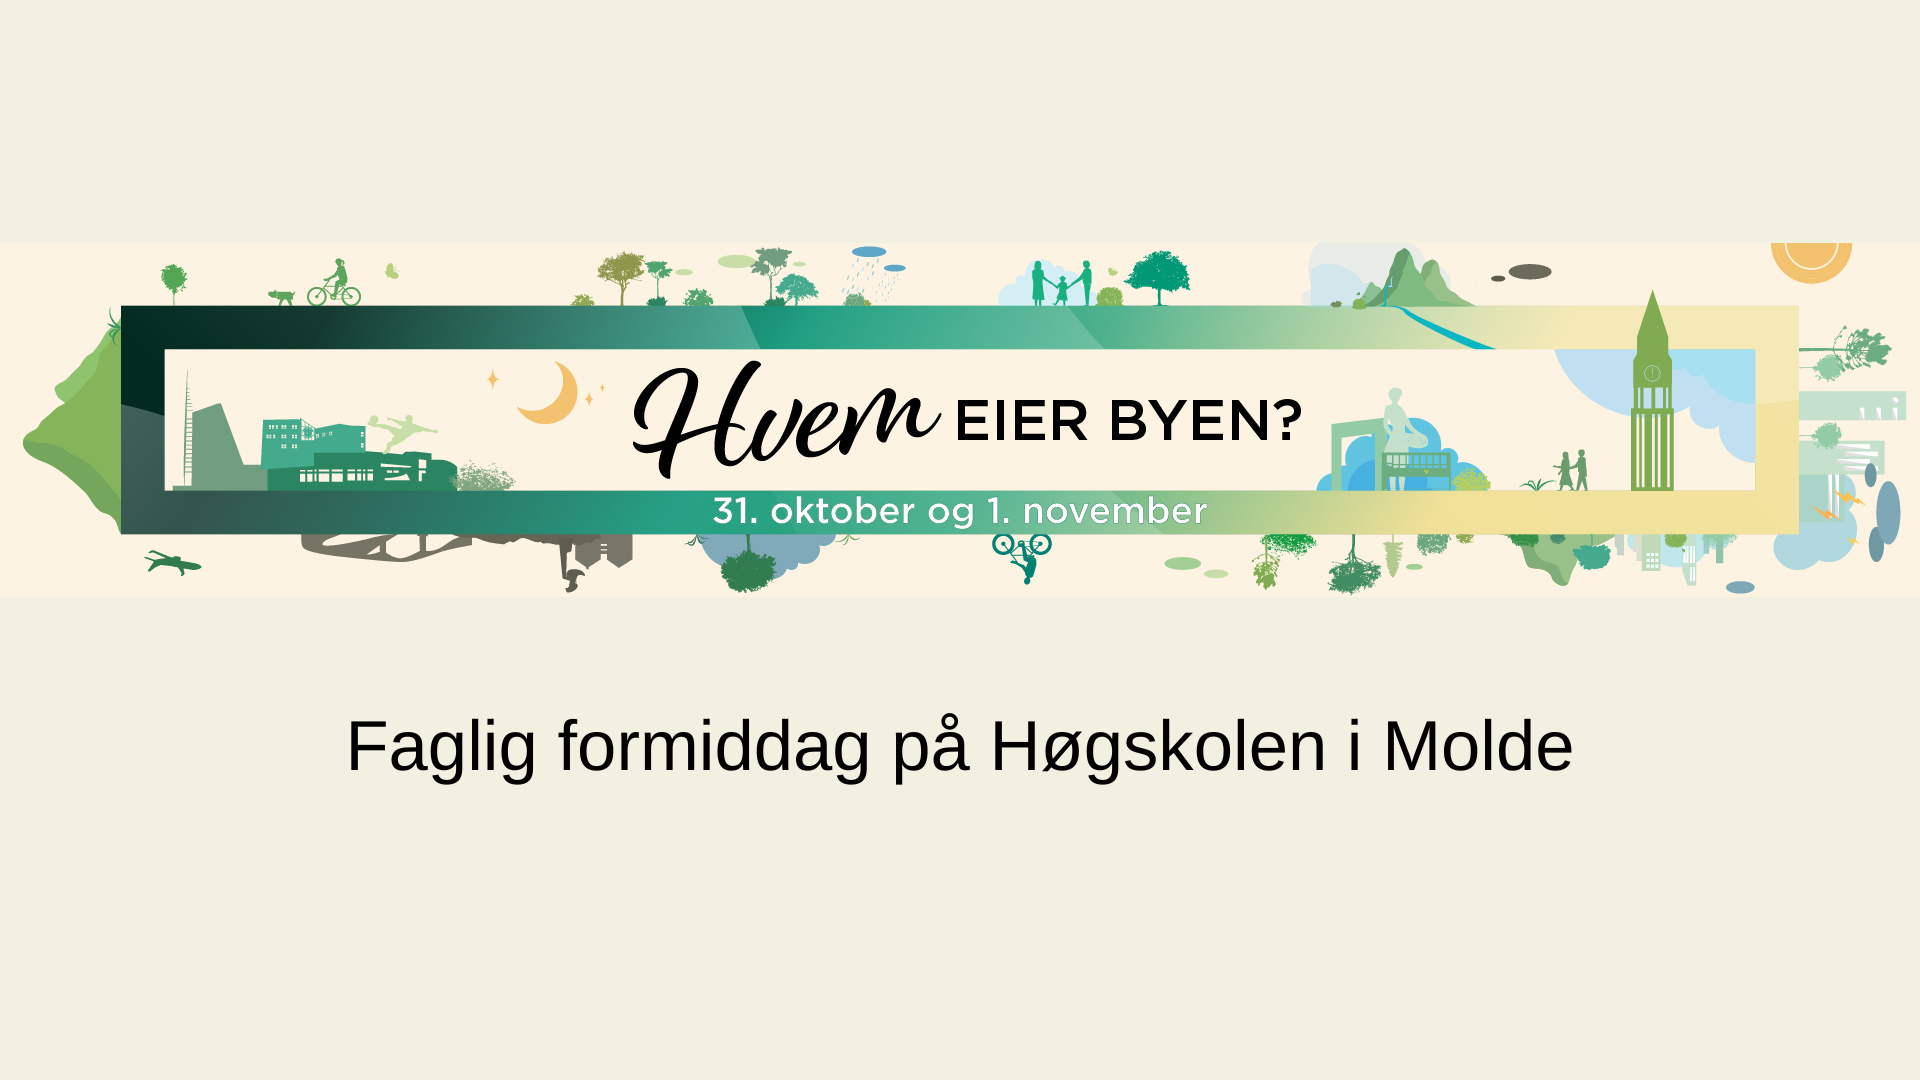  Faglige presentasjoner ved Høgskolen i Molde «Hvem eier byen?»